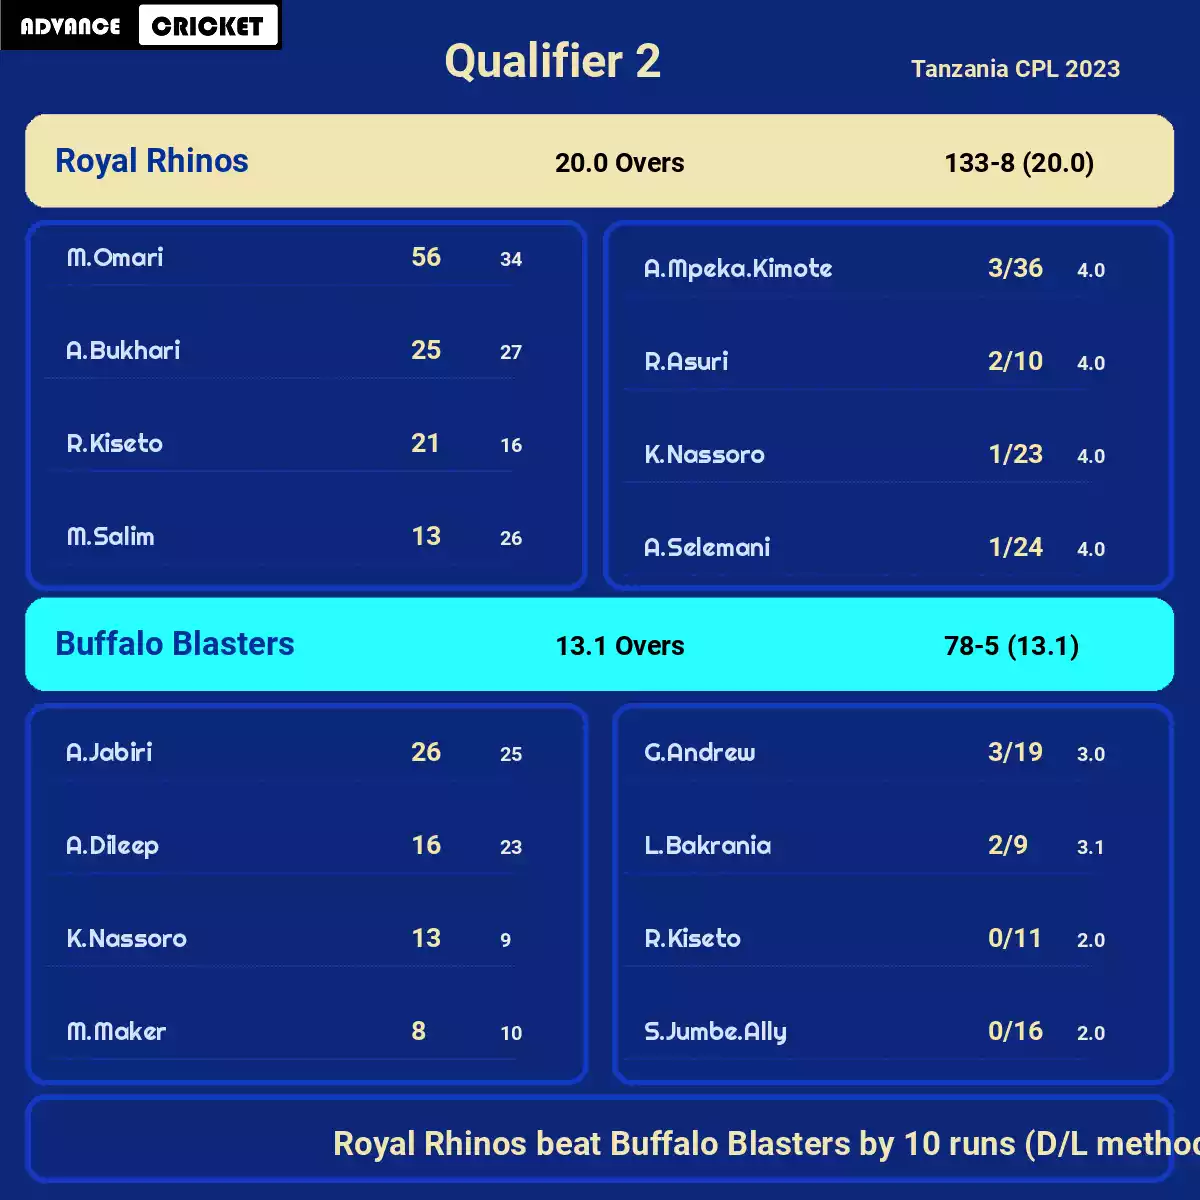 BUB vs ROI Qualifier 2 Tanzania CPL 2023